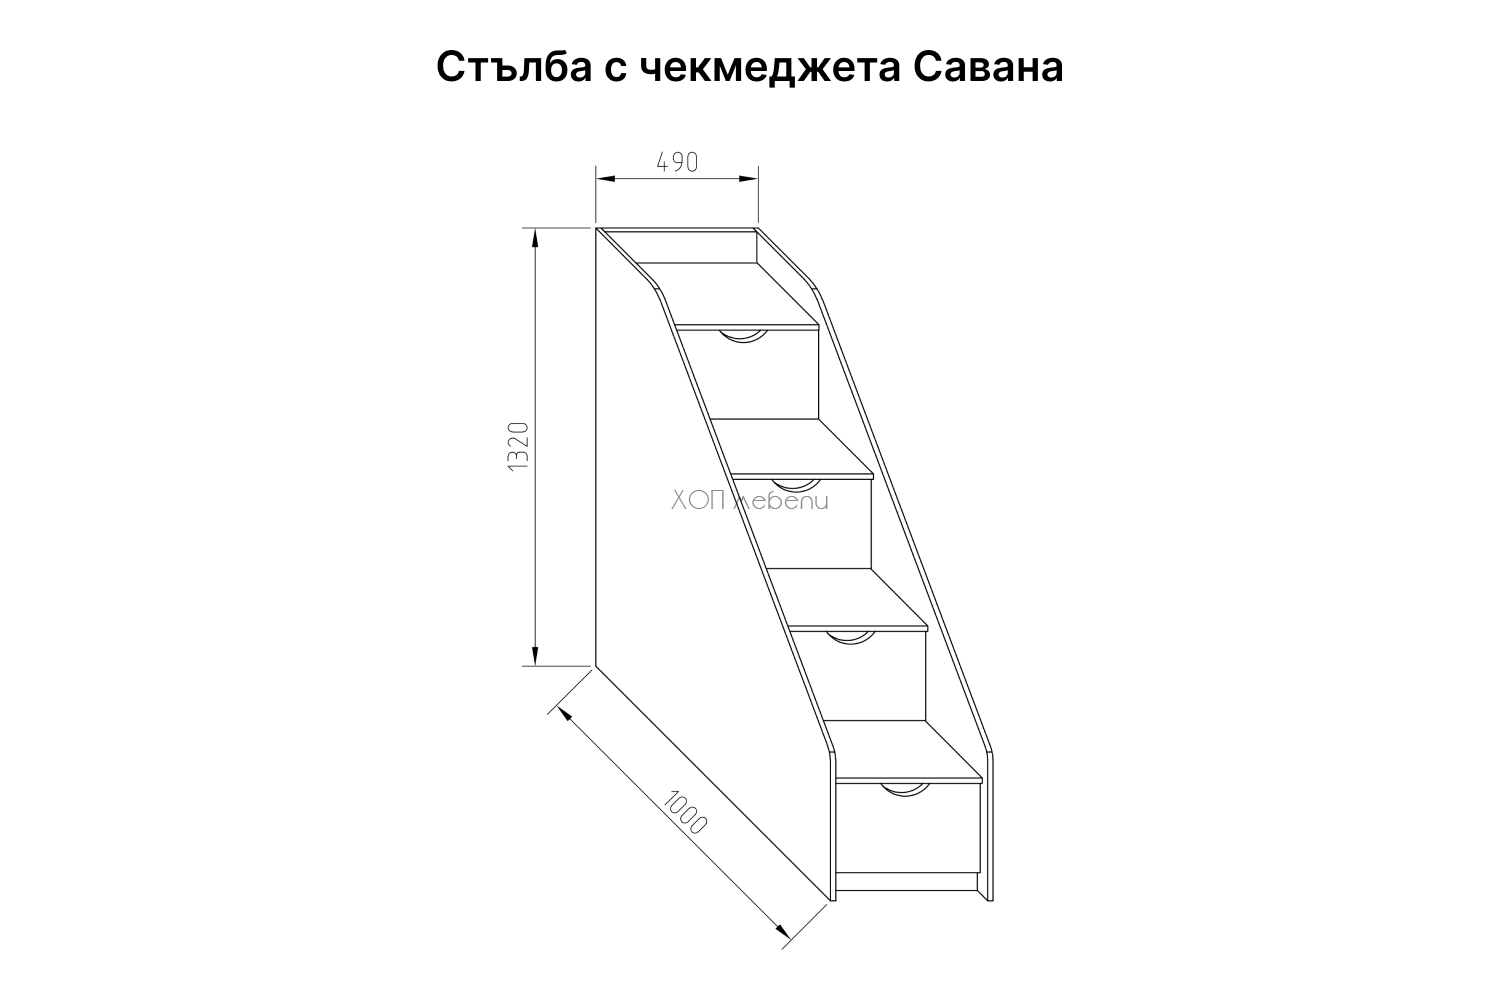 Размери на Легло с гардероб и бюро Савана - лен ID 13431 - 4